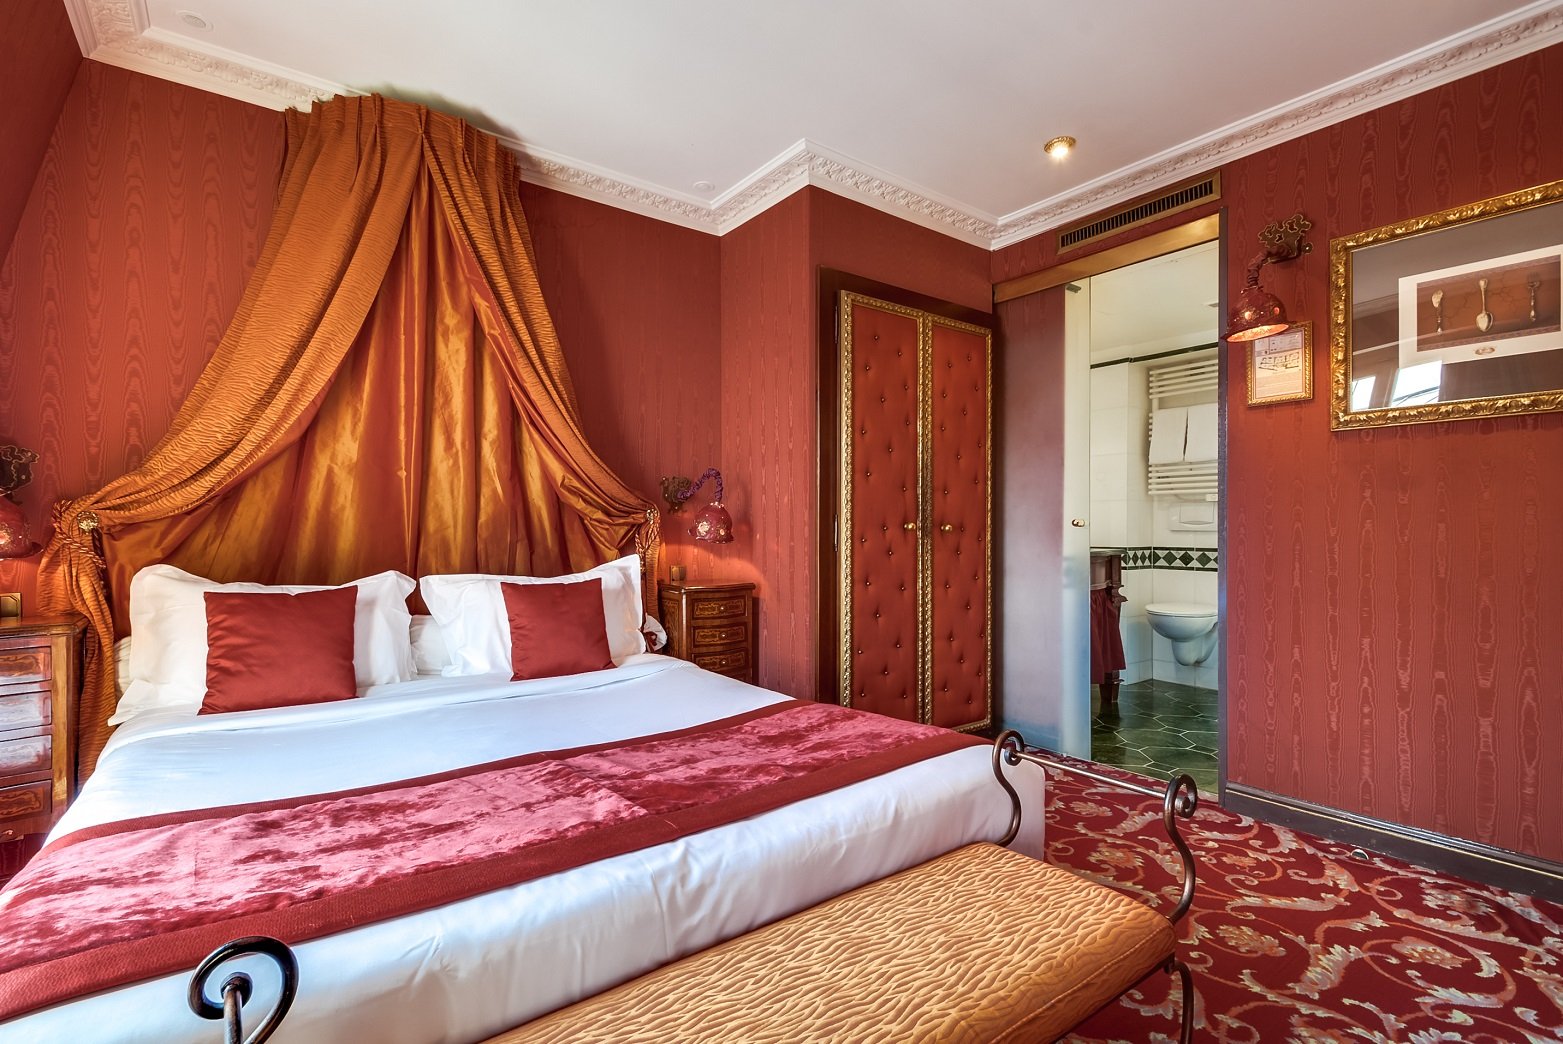 Villa Royale Pigalle Paris- Double Room- 4 star hotel